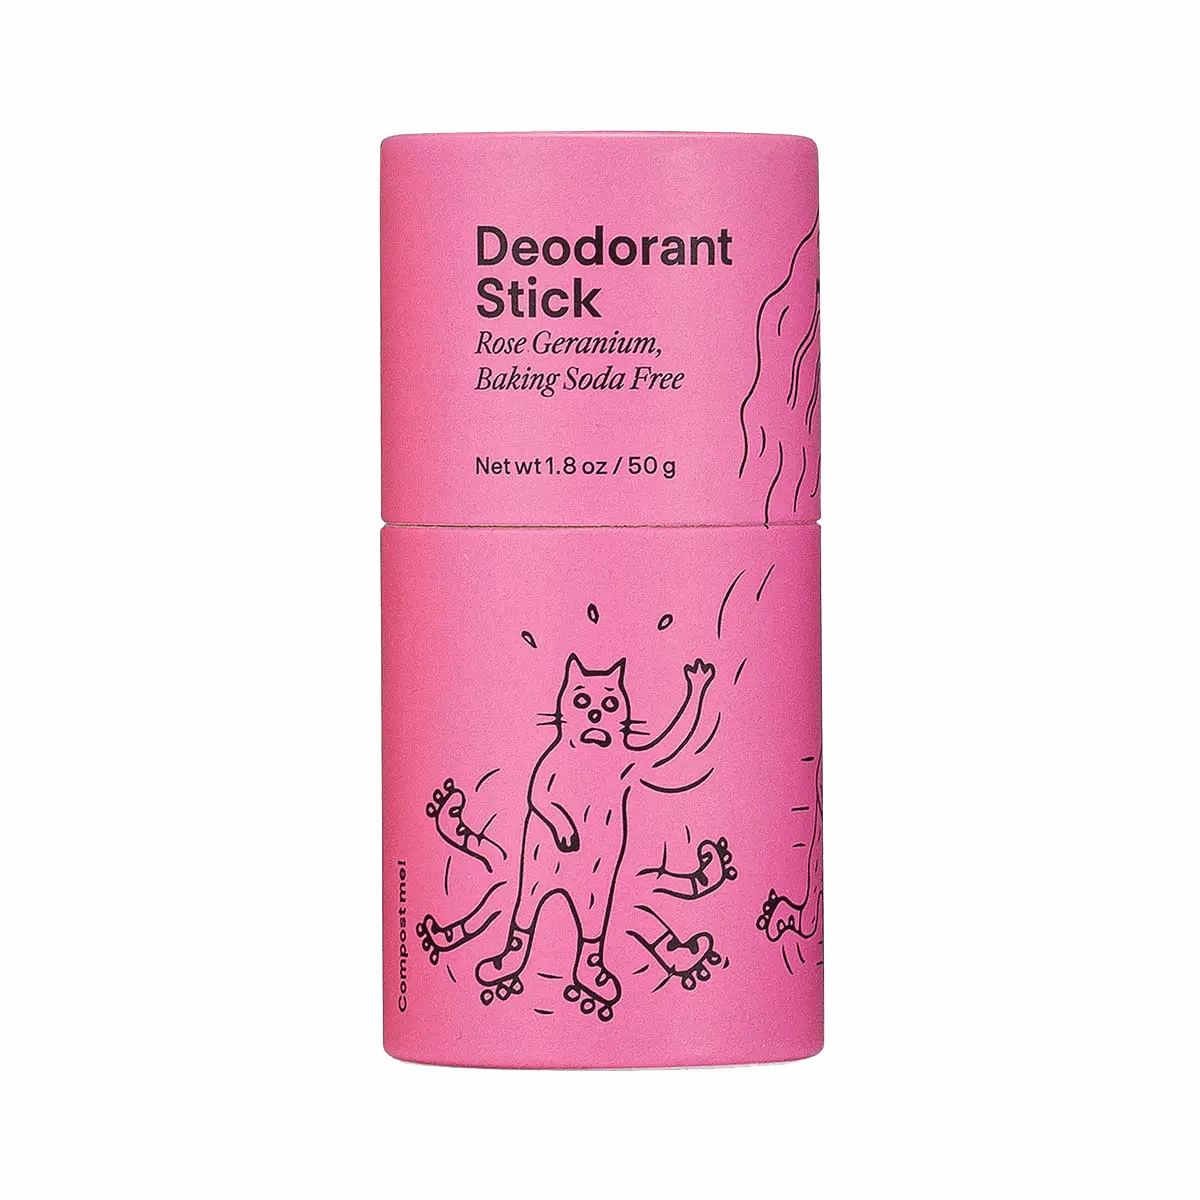 Rose Geranium Deodorant Stick